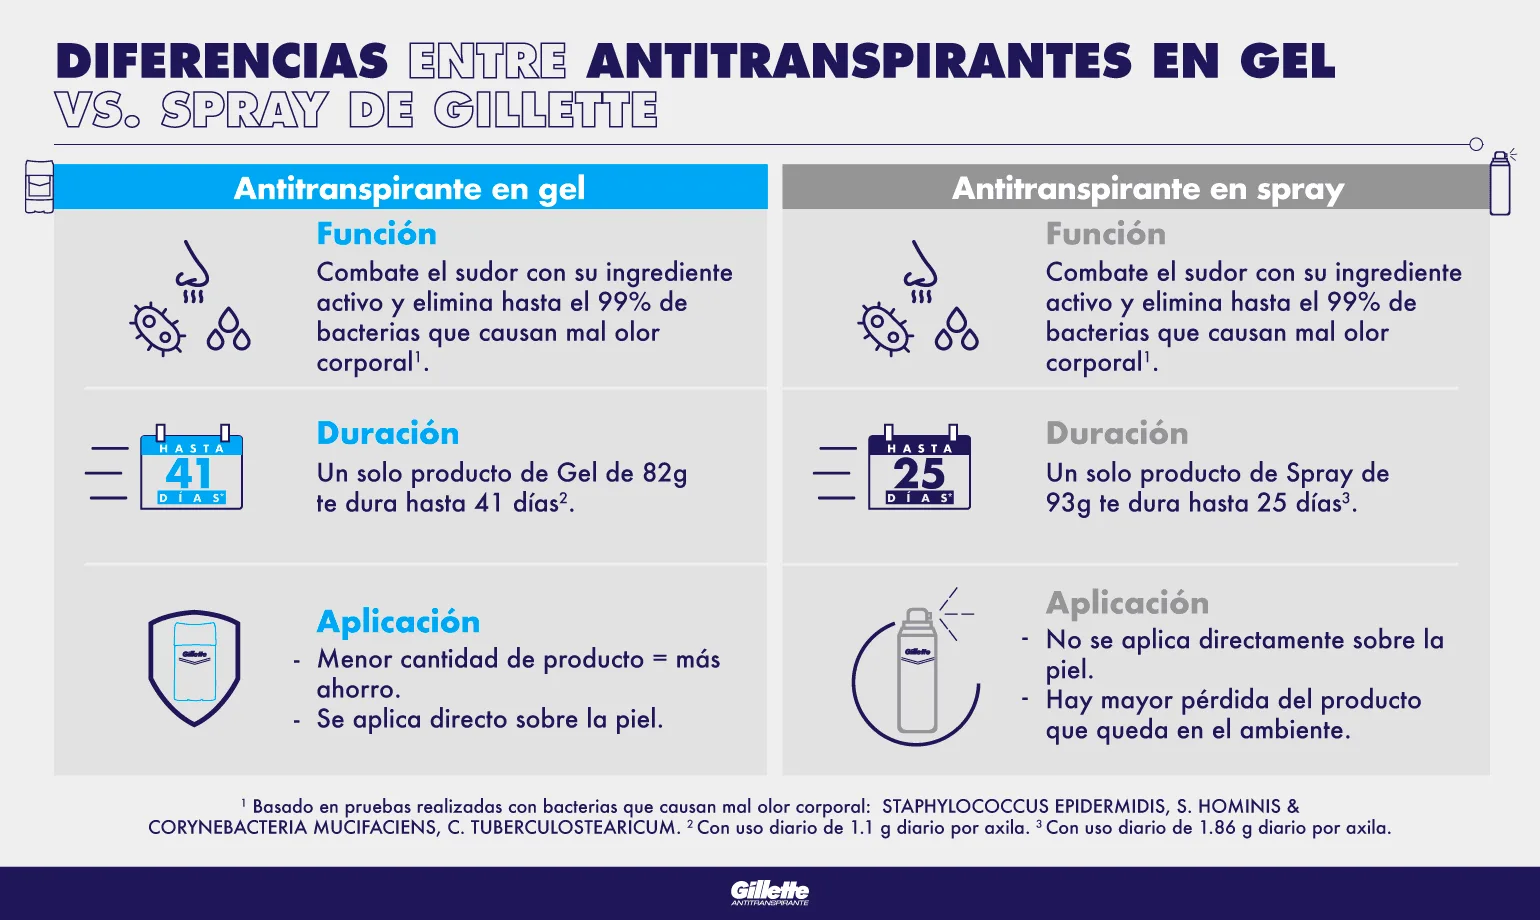 ¿Cuál es la diferencia entre antitranspirantes en gel y en spray?